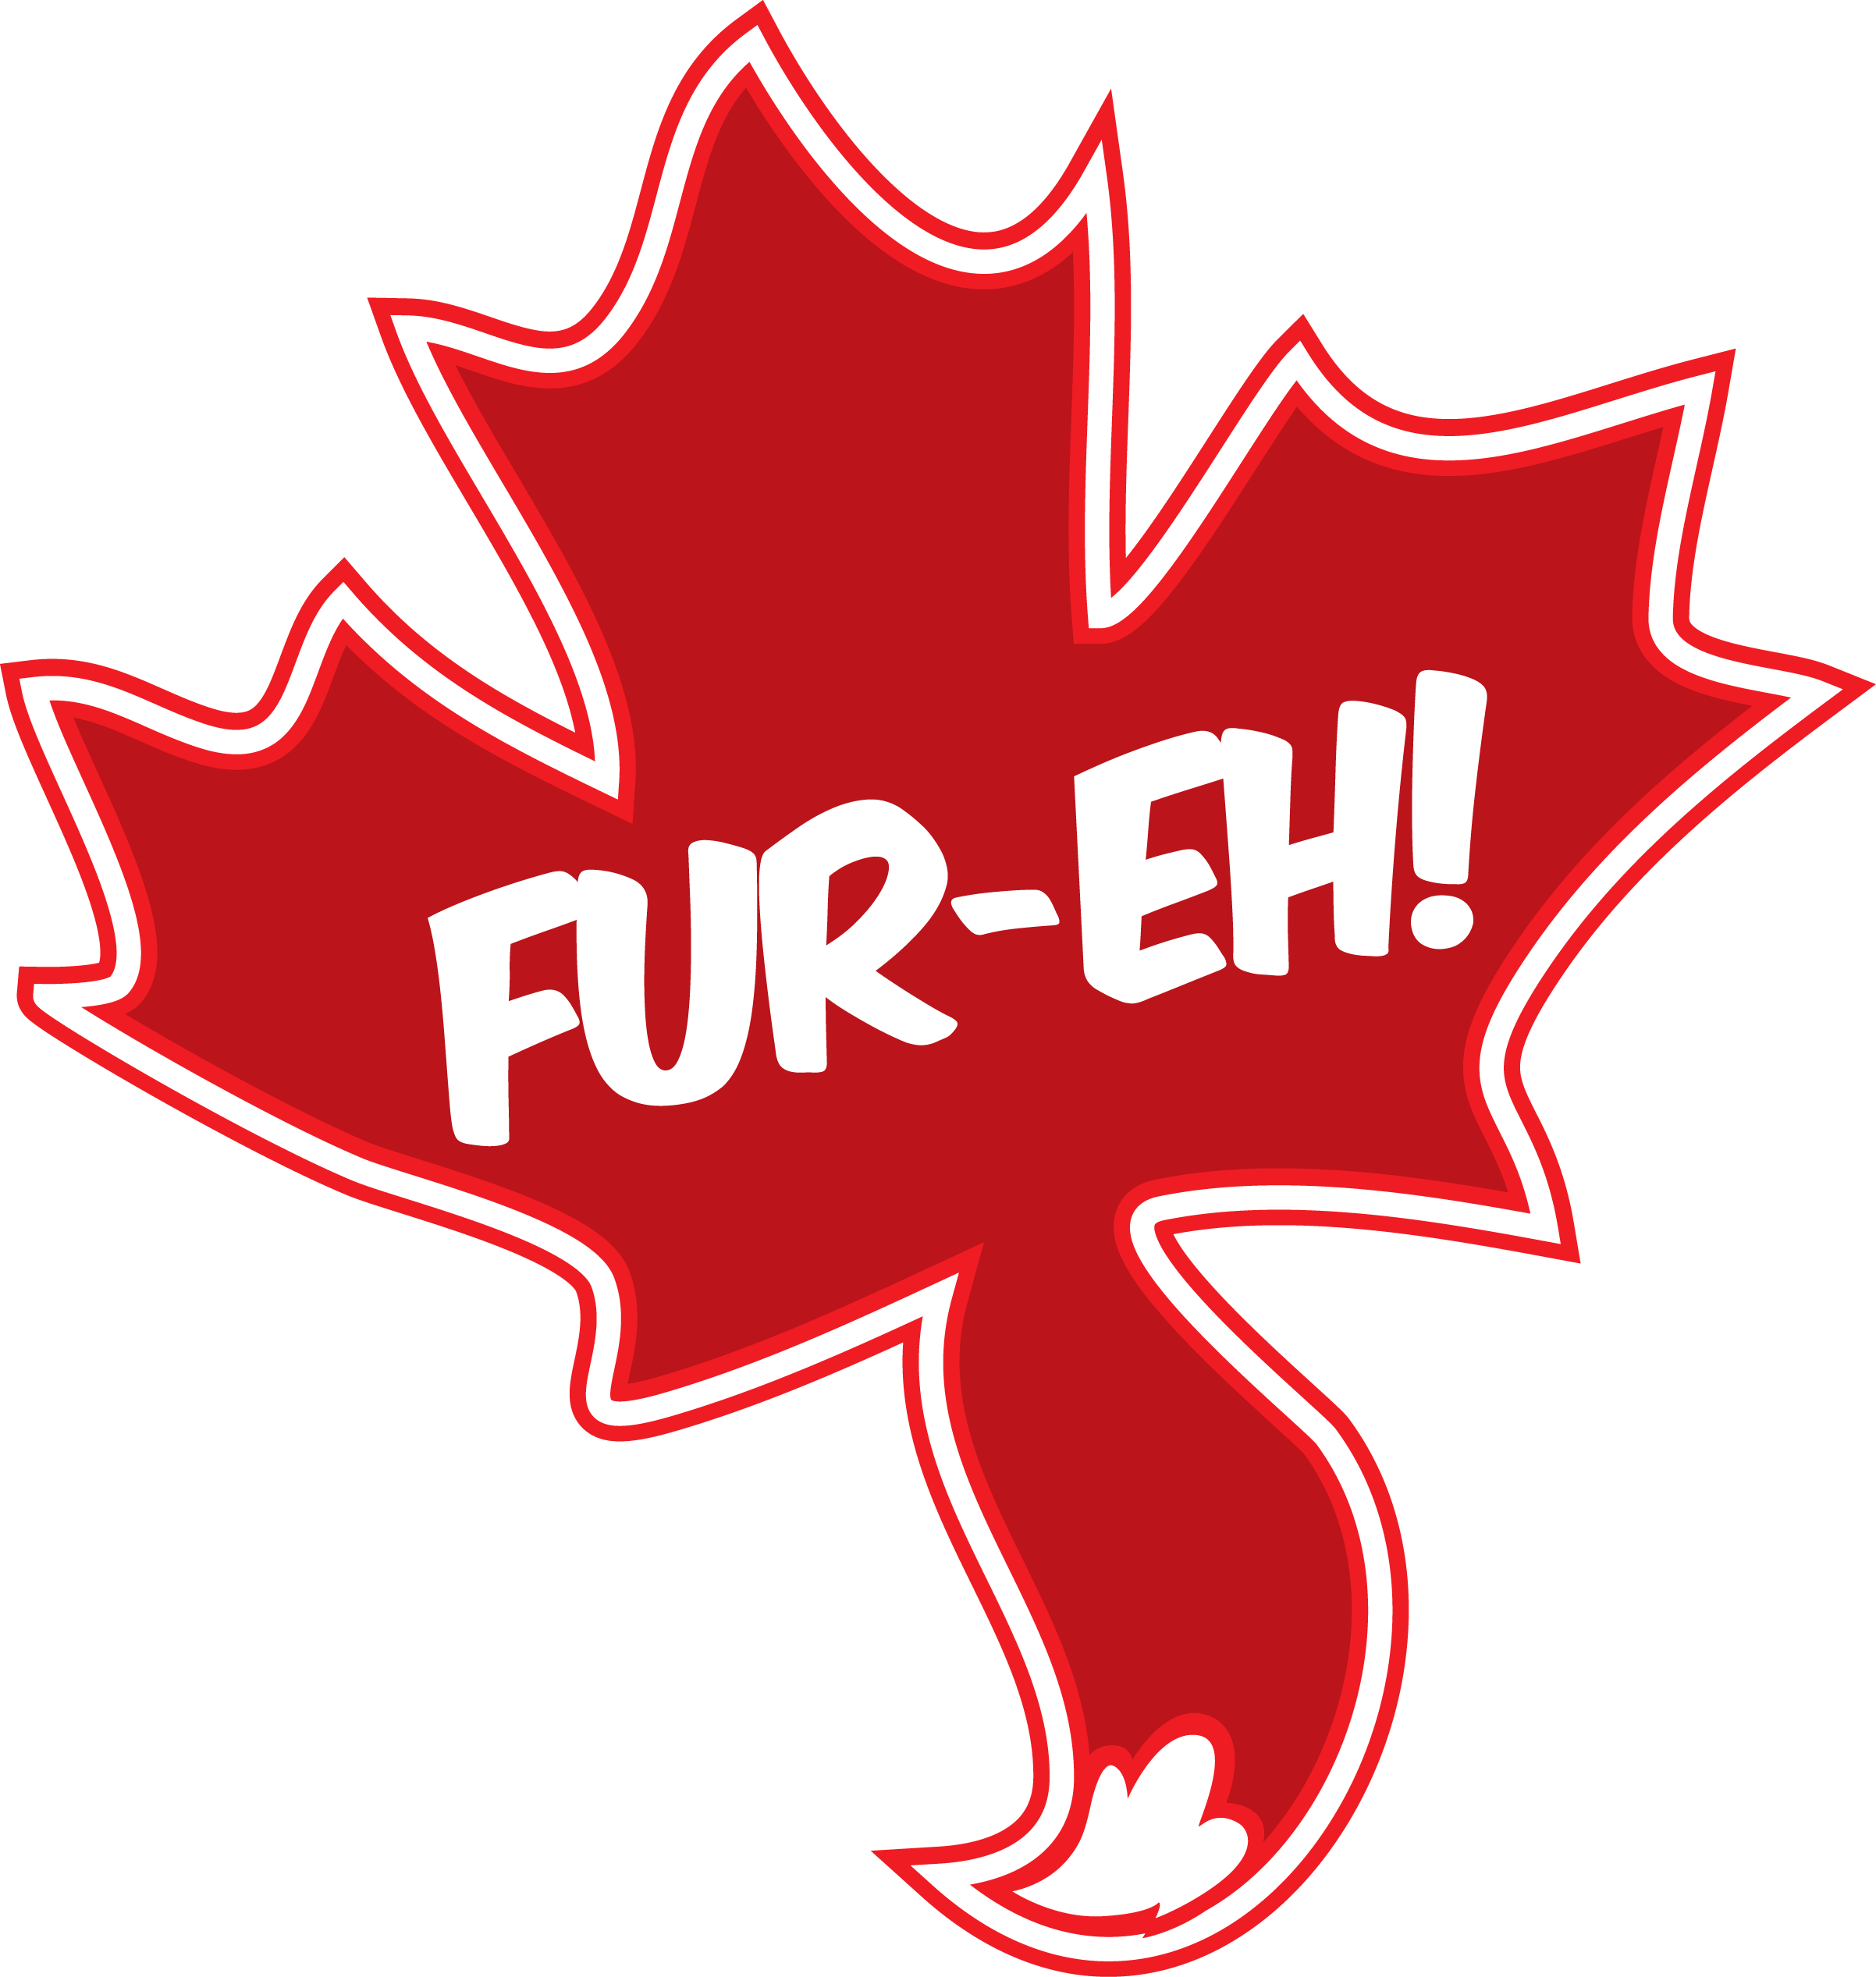 FurEh Logo